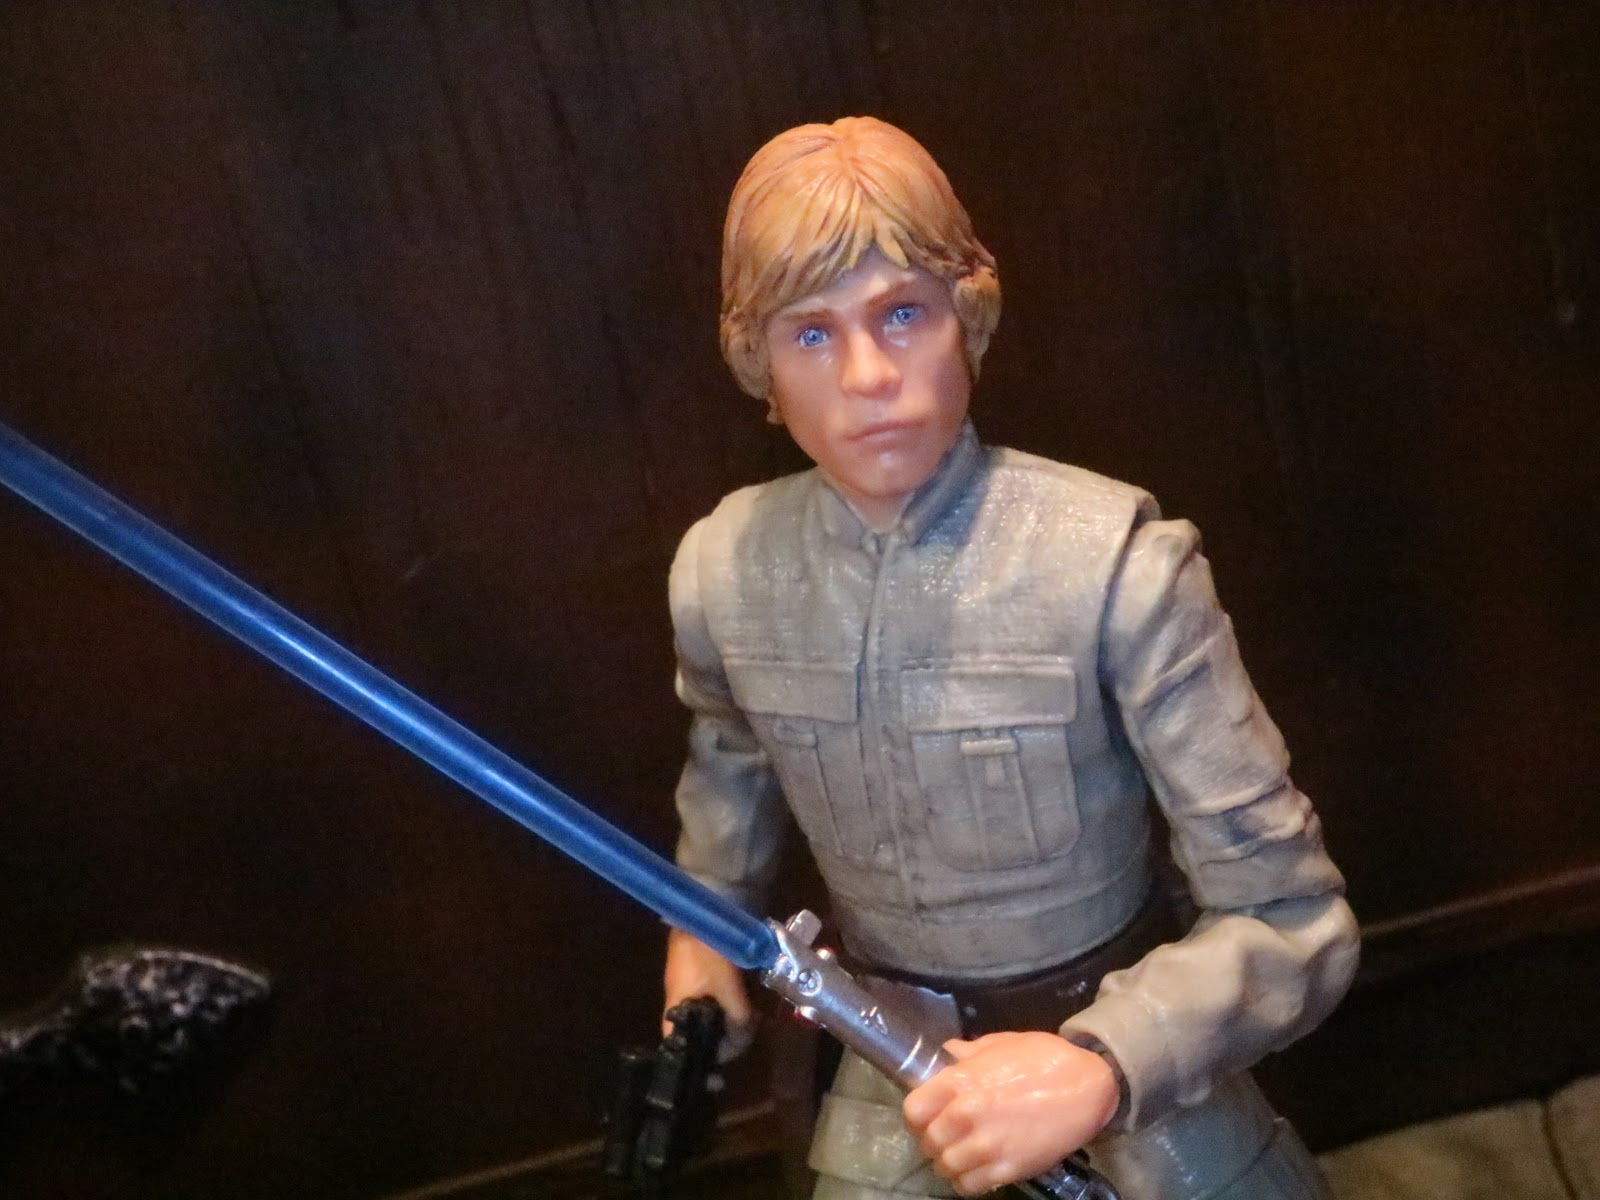 Luke Skywalker Bespin Duel Hasbro Empire Strikes Back 